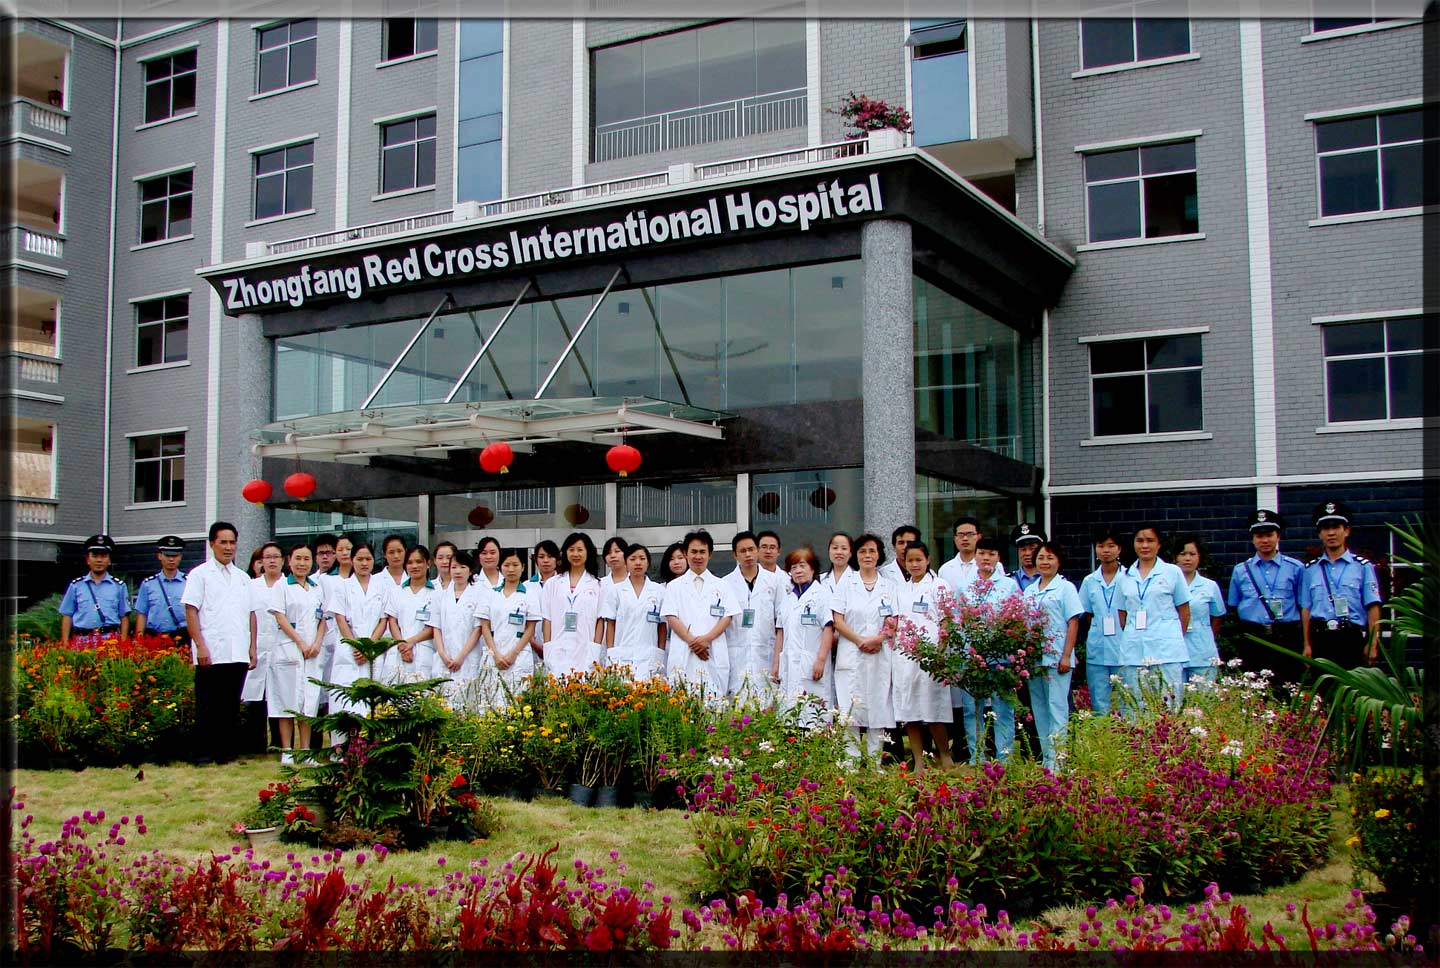 Второй госпиталь в галактике. Аддис Абеба Балча госпиталь. Госпиталь красного Креста в Эфиопии. Госпиталь Балча в Эфиопии. Госпиталь российского красного Креста в Аддис-Абебе..